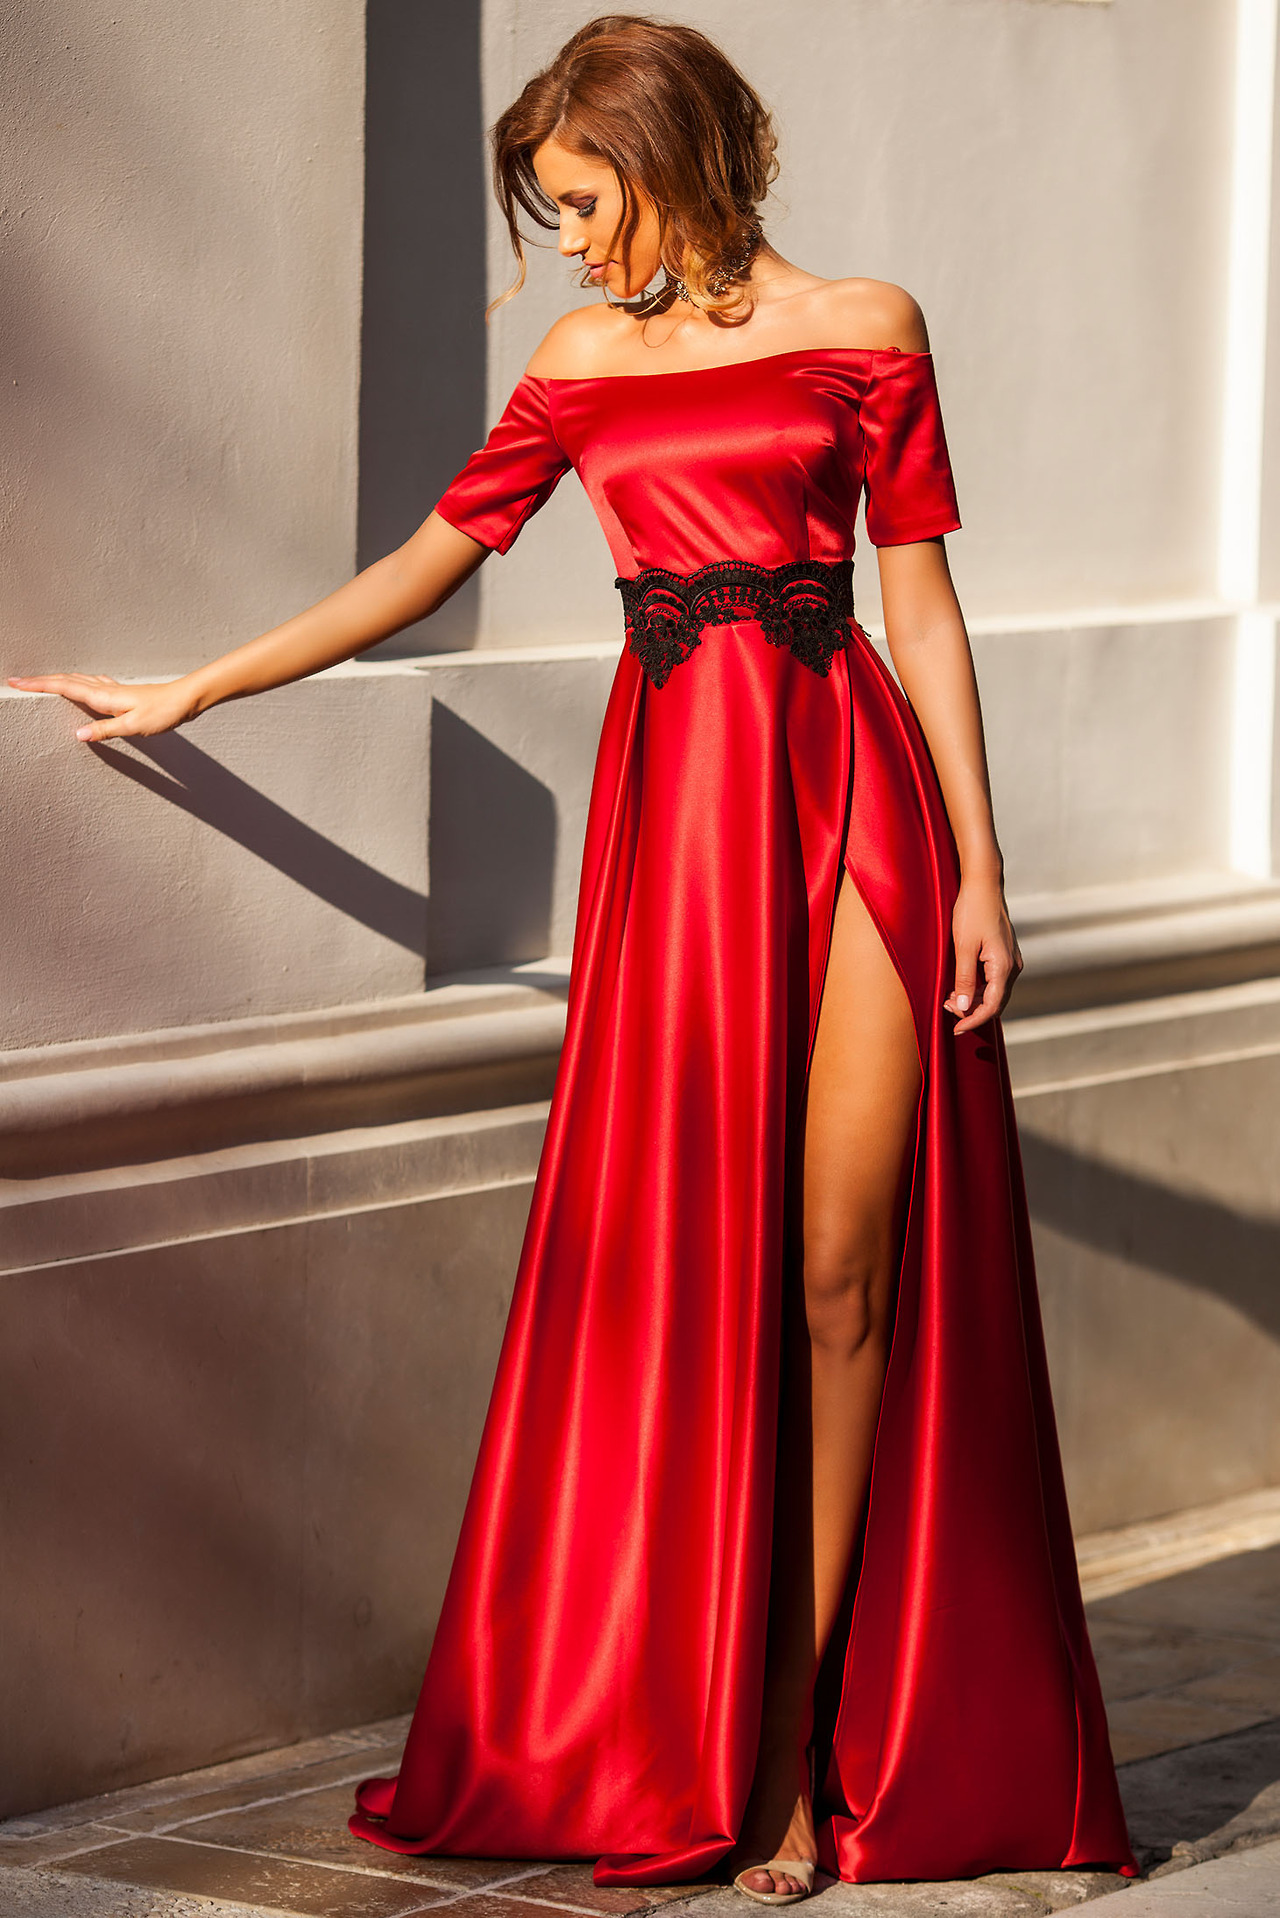 Vestidos Rojos Largos 2017 Modelos! - de vestidos de gala, vestidos de